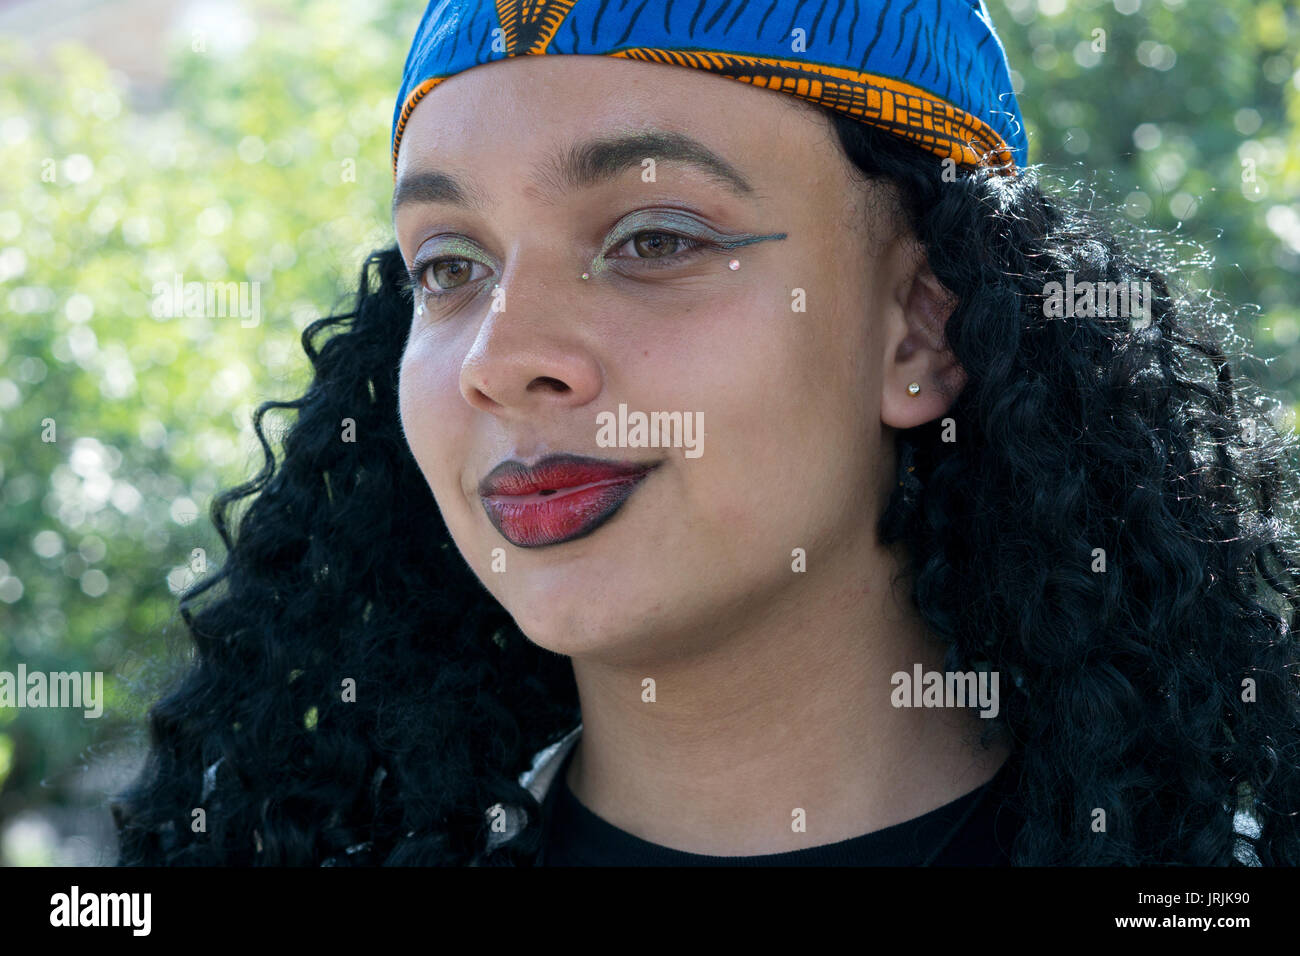 Headshot eine attraktive junge Dame von West afrikanischer Abstammung, die Praktiken der IFA-Religion. Im Washington Square Park in Manhattan, New York City. Stockfoto